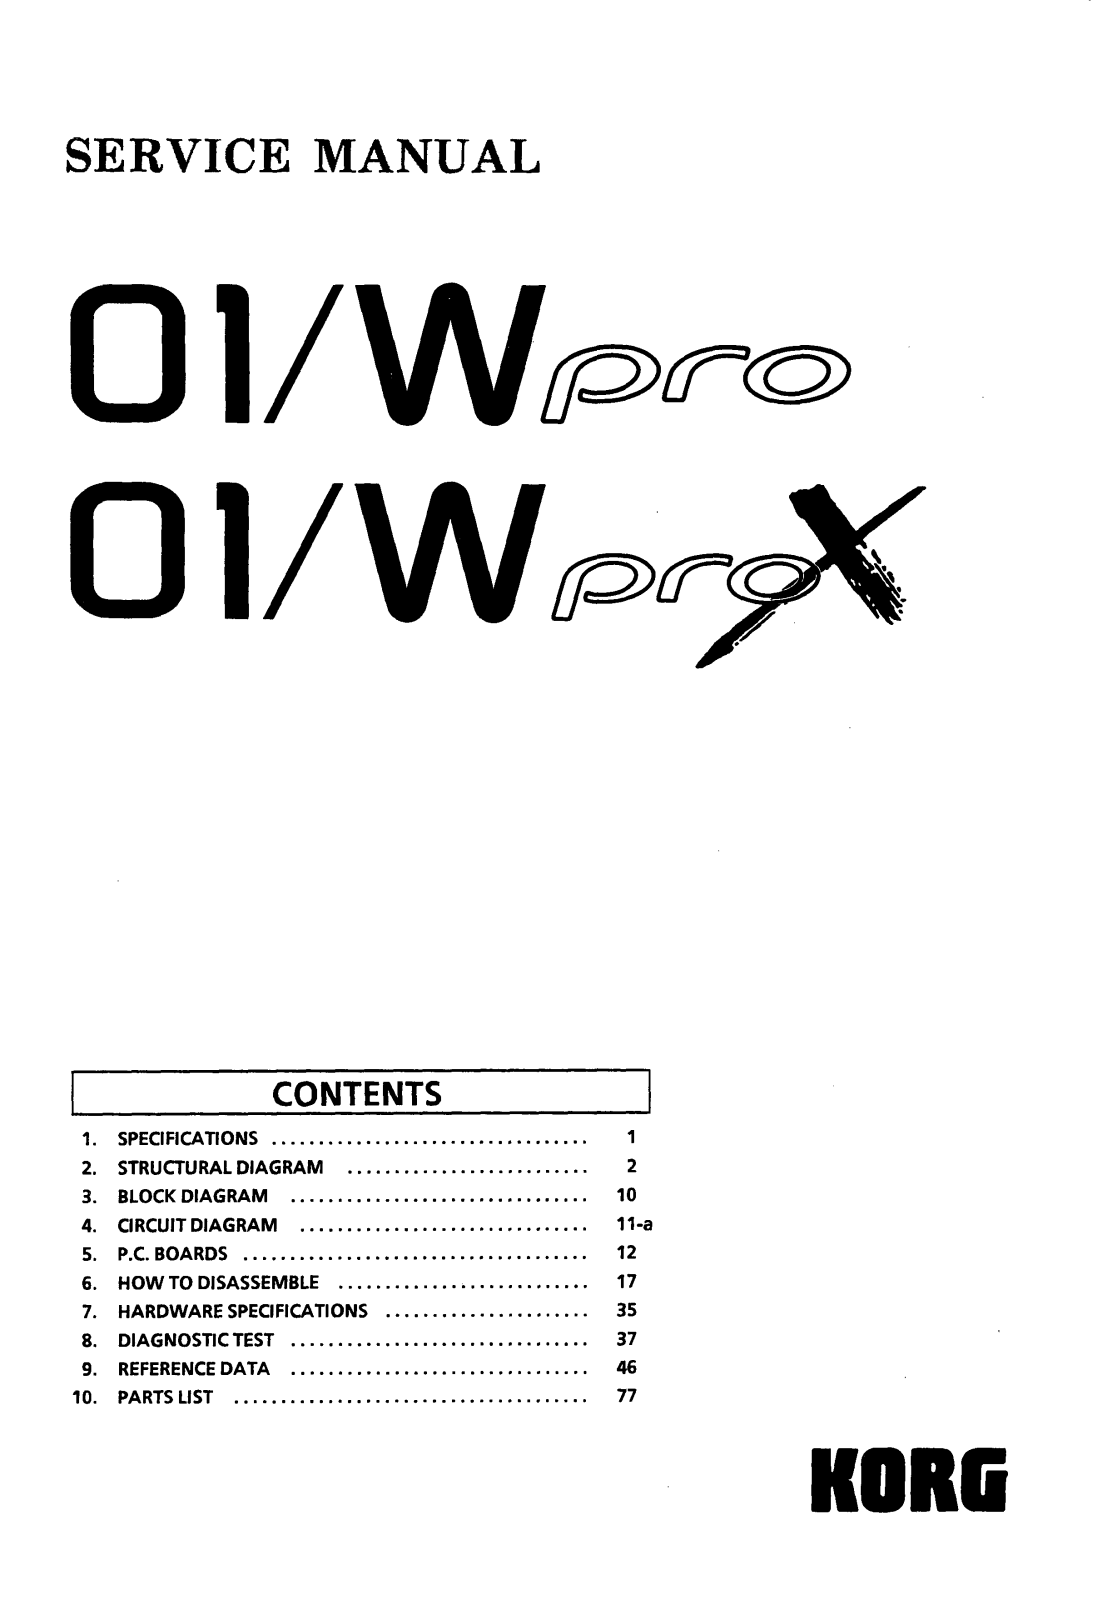 Korg 01-W pro X, 01-W pro Service Manual